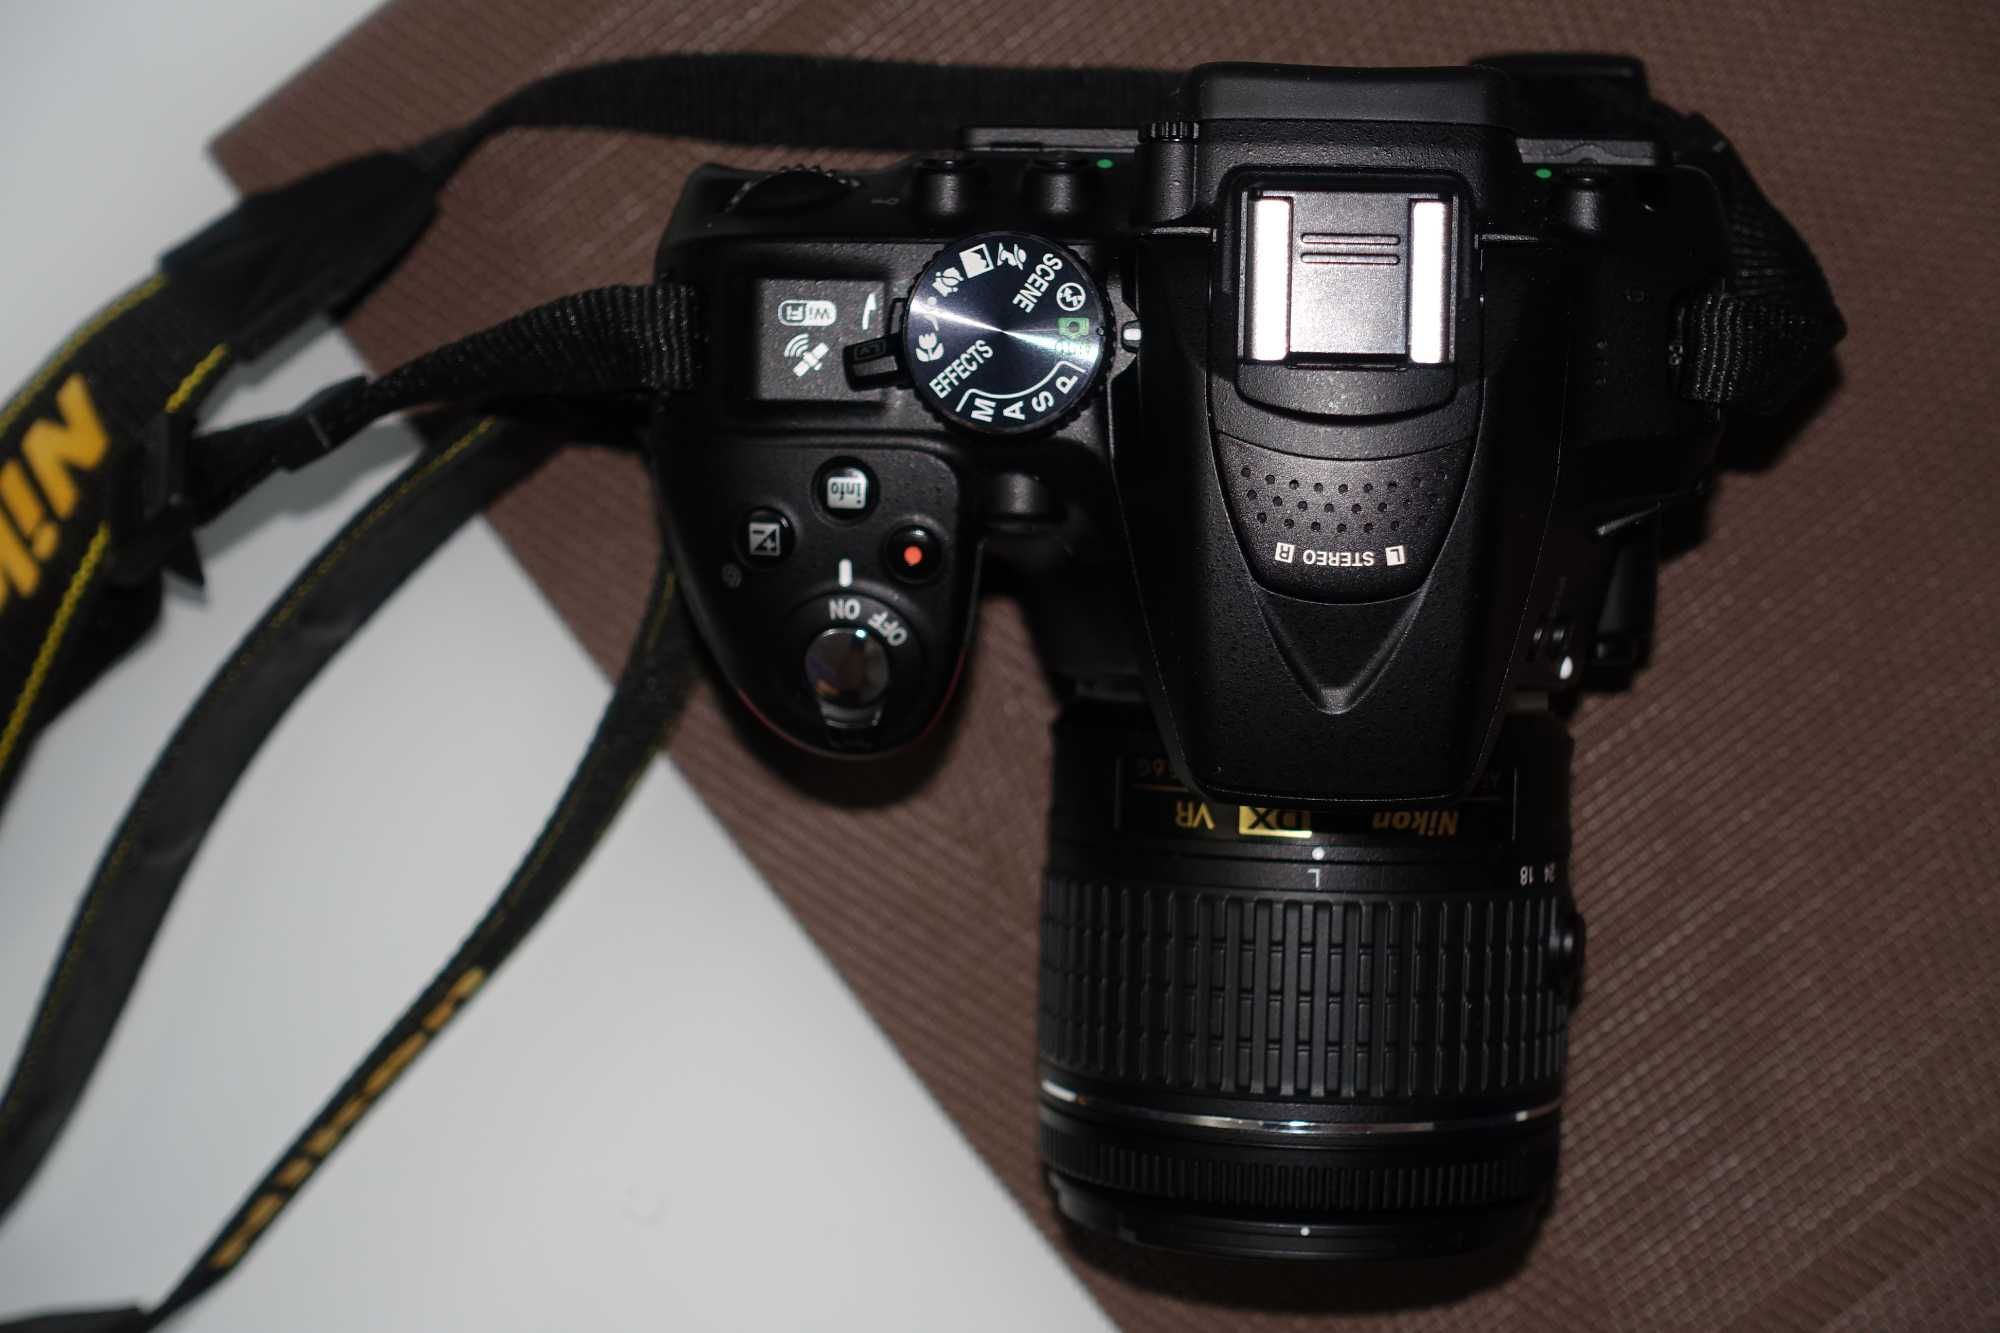 Camera foto DSLR NIKON D5300 cu Obiectiv Nikon 18-55